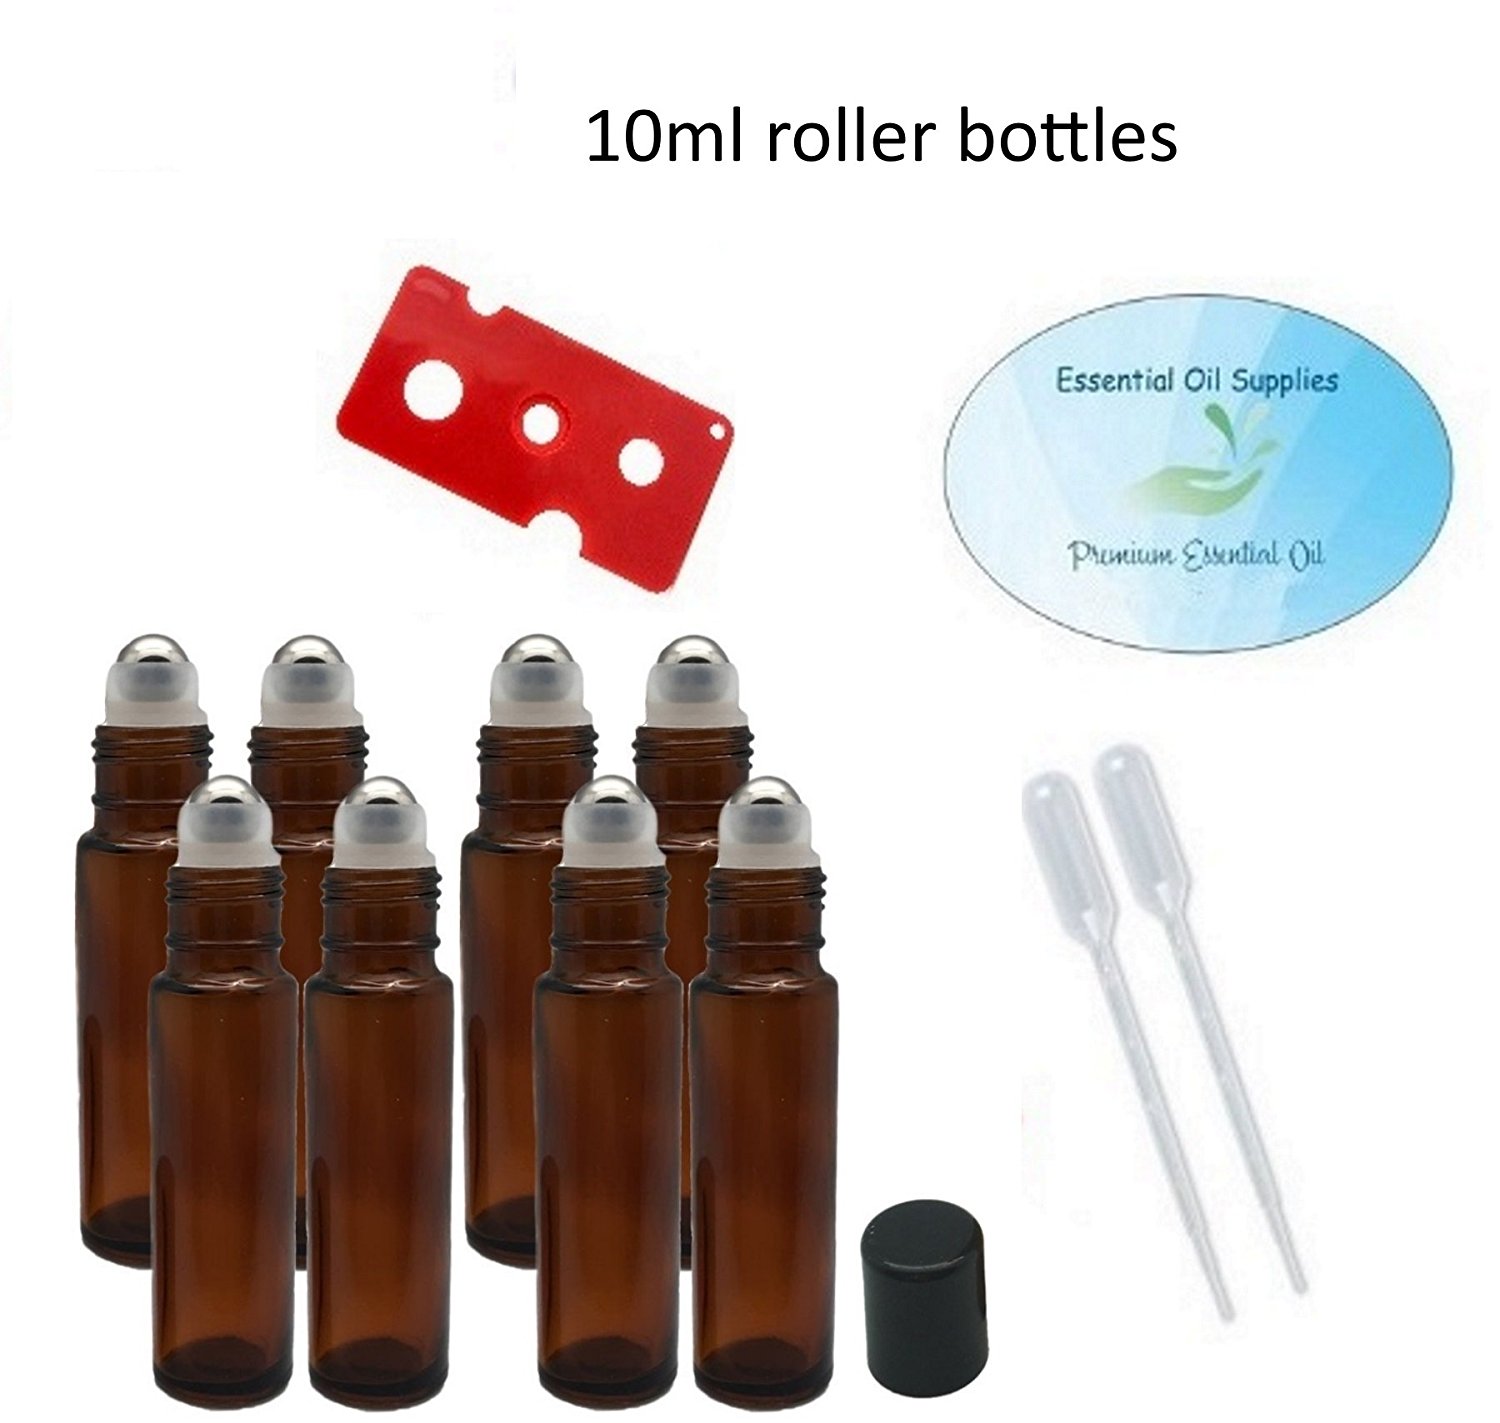 2 Dropper, 2 Bottle Opener, 2 Funnel Amber Roll on Bottles for Essential Oils 10 ml 36 Pack Glass Roller Bottles Set Simiao